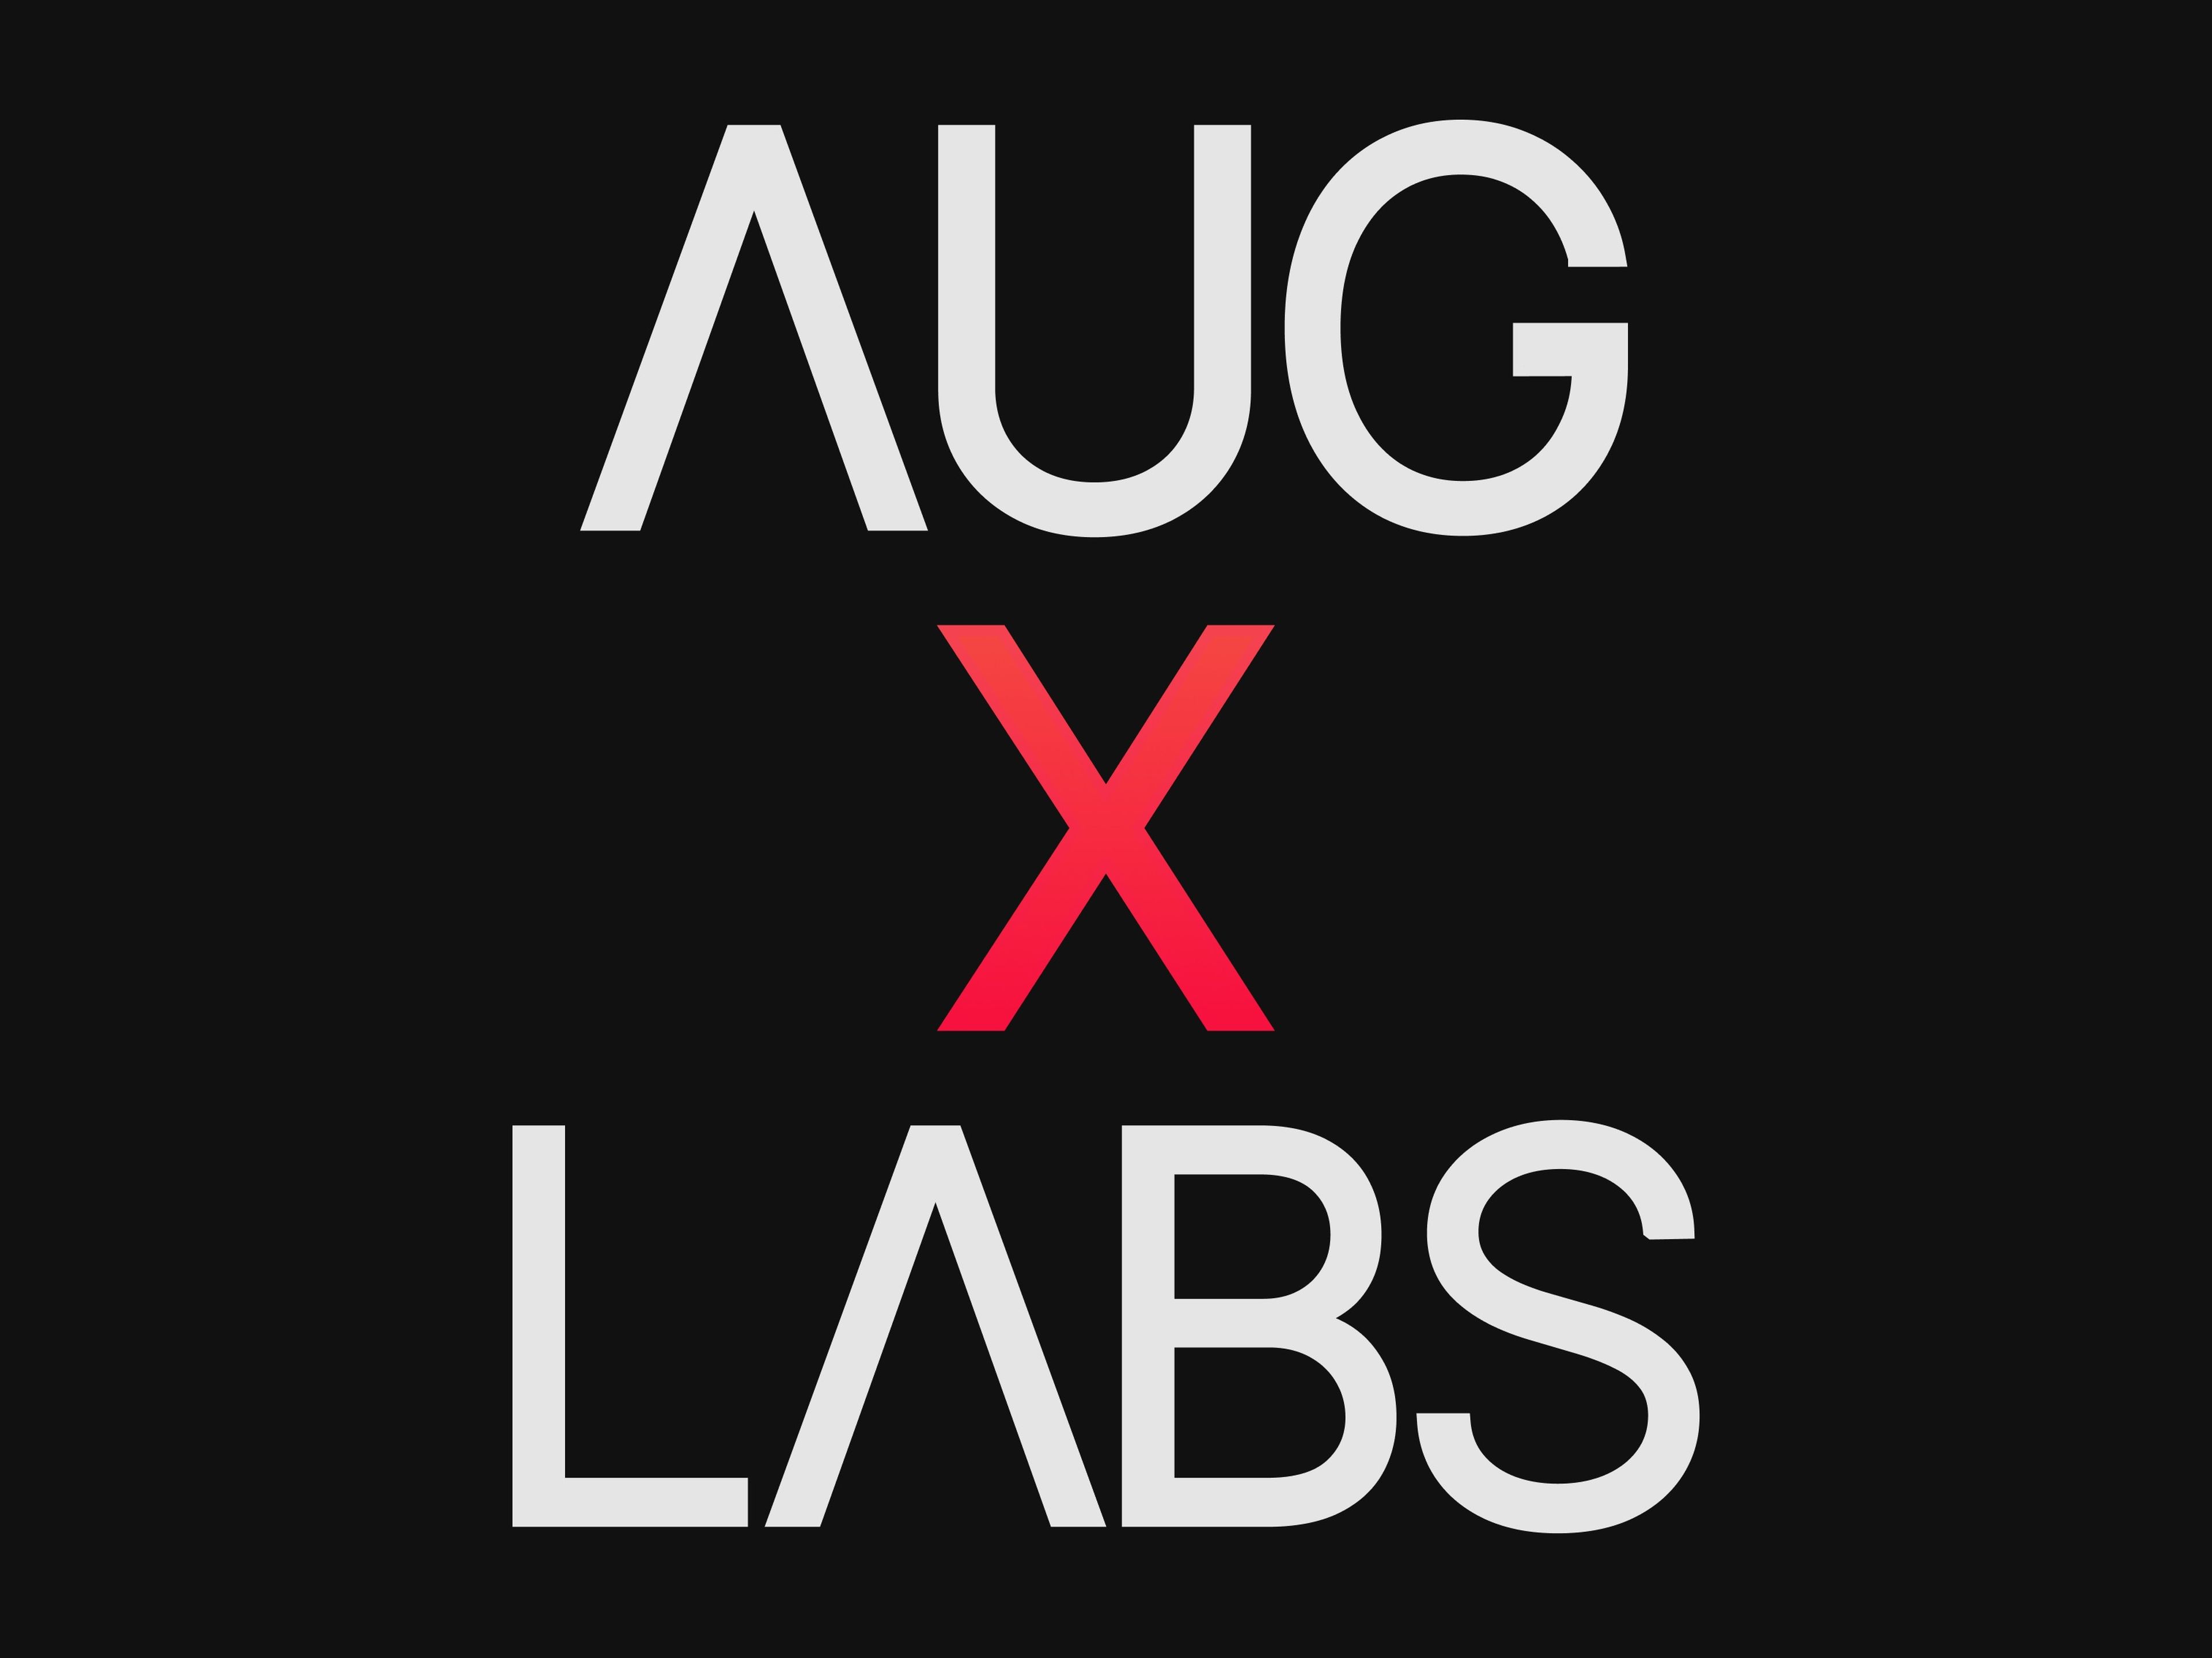 Aug X Labs